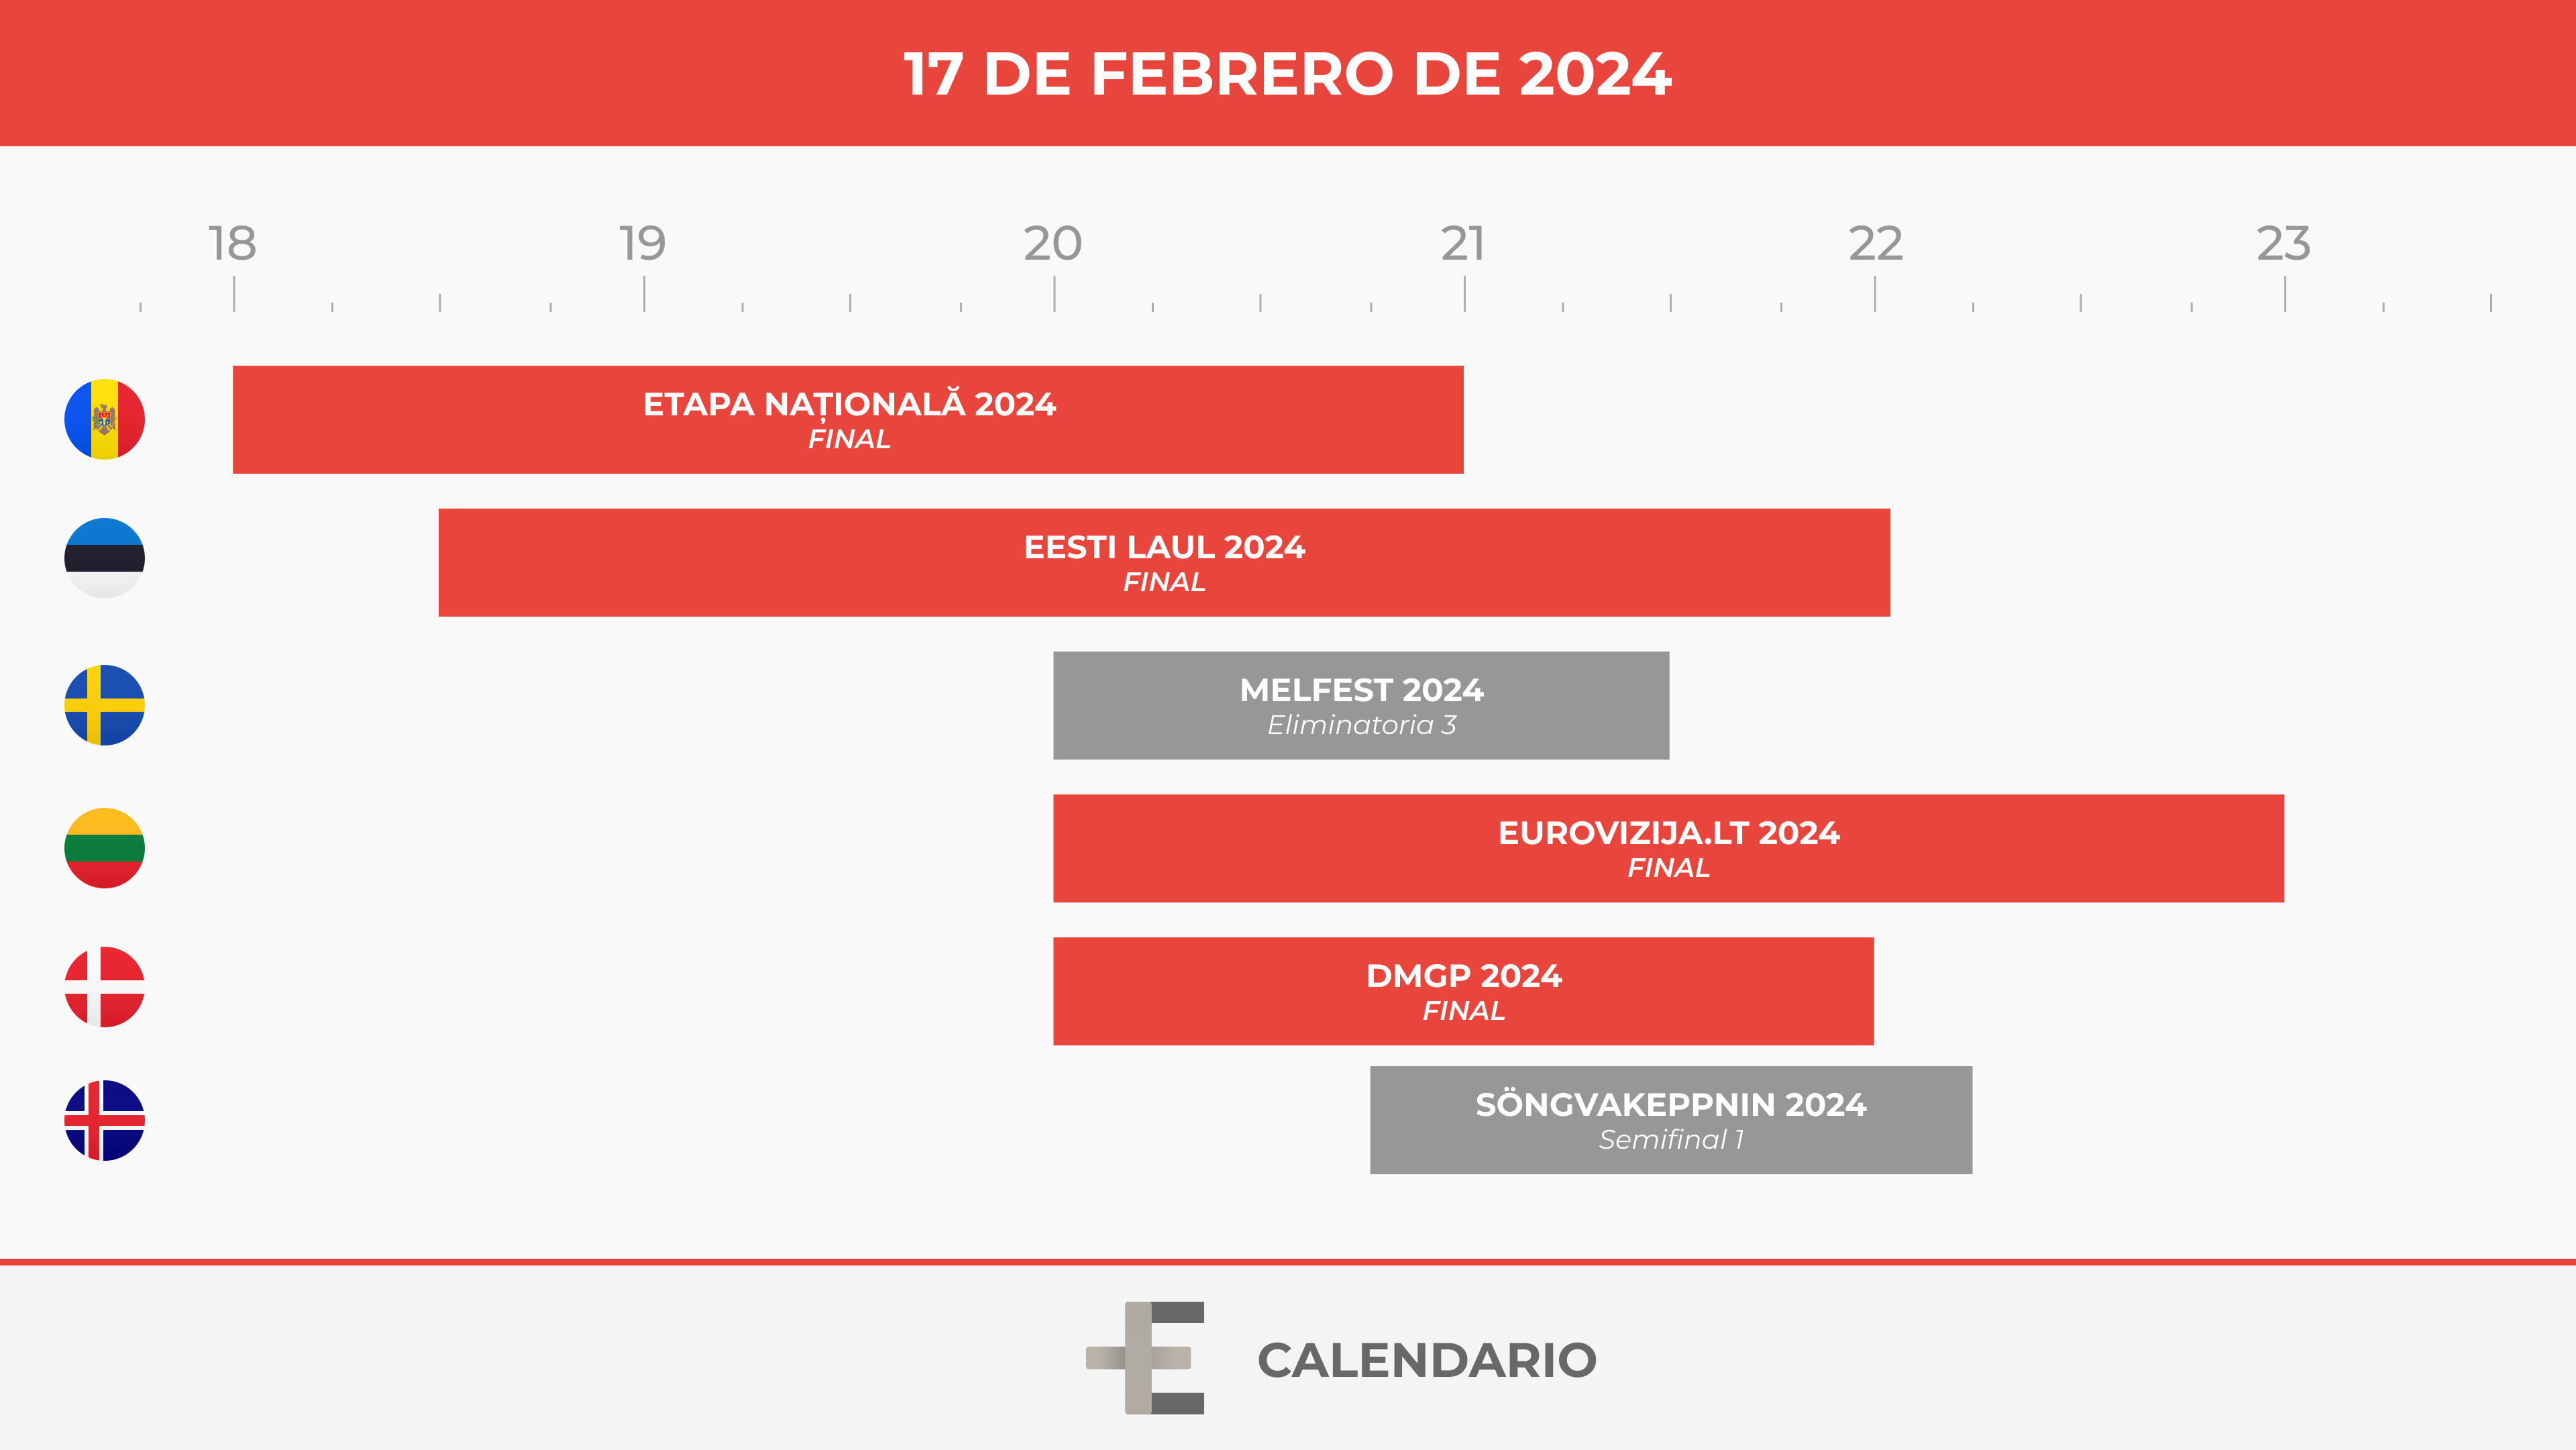 Calendario 17 febrero 2024 / Elaboración propia